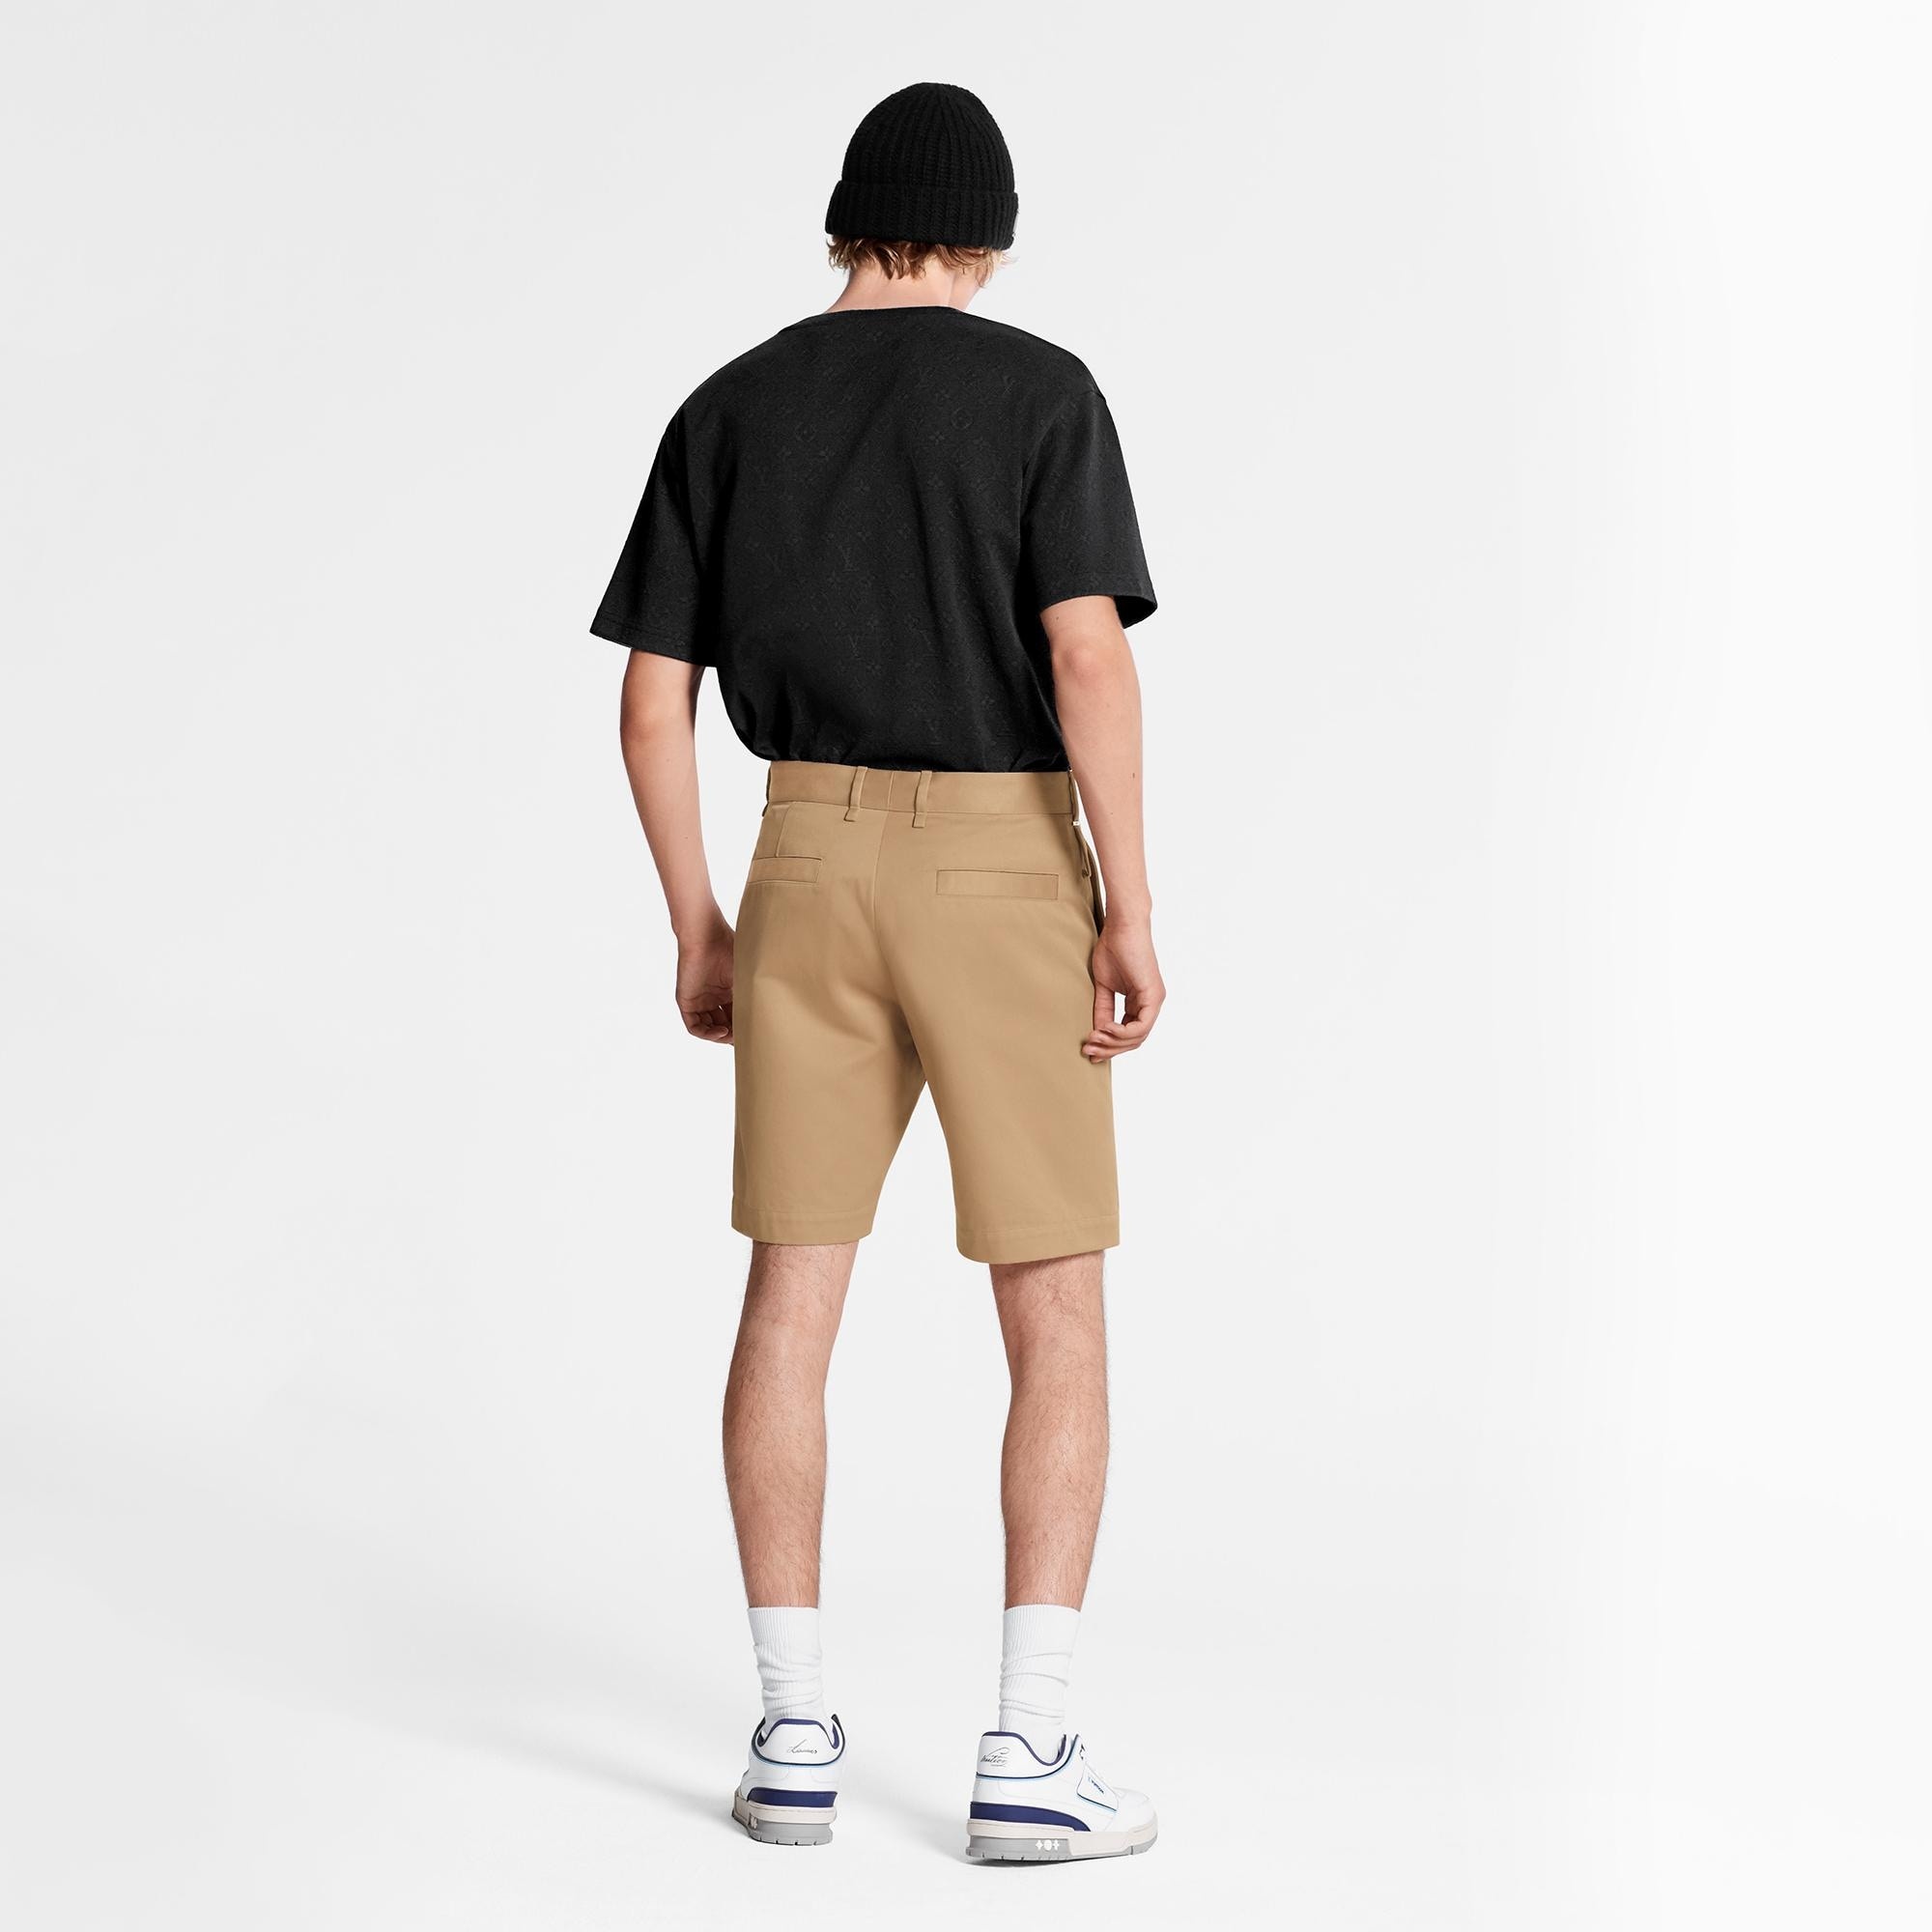 Cotton Chino Shorts - 4